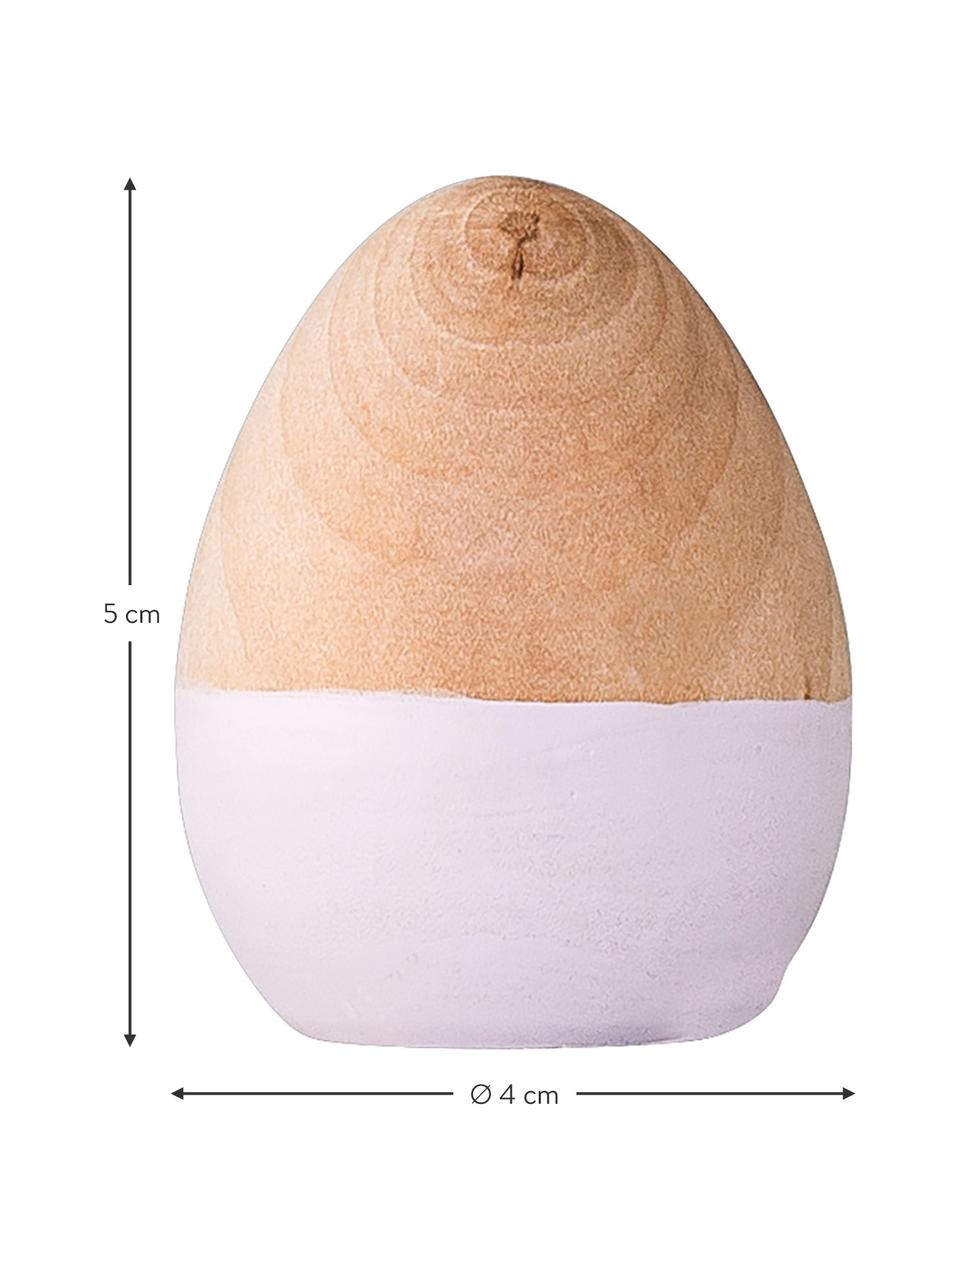 Jajo dekoracyjne Nature, Brzoza, Jasny brązowy, biały, Ø 4 x W 5 cm